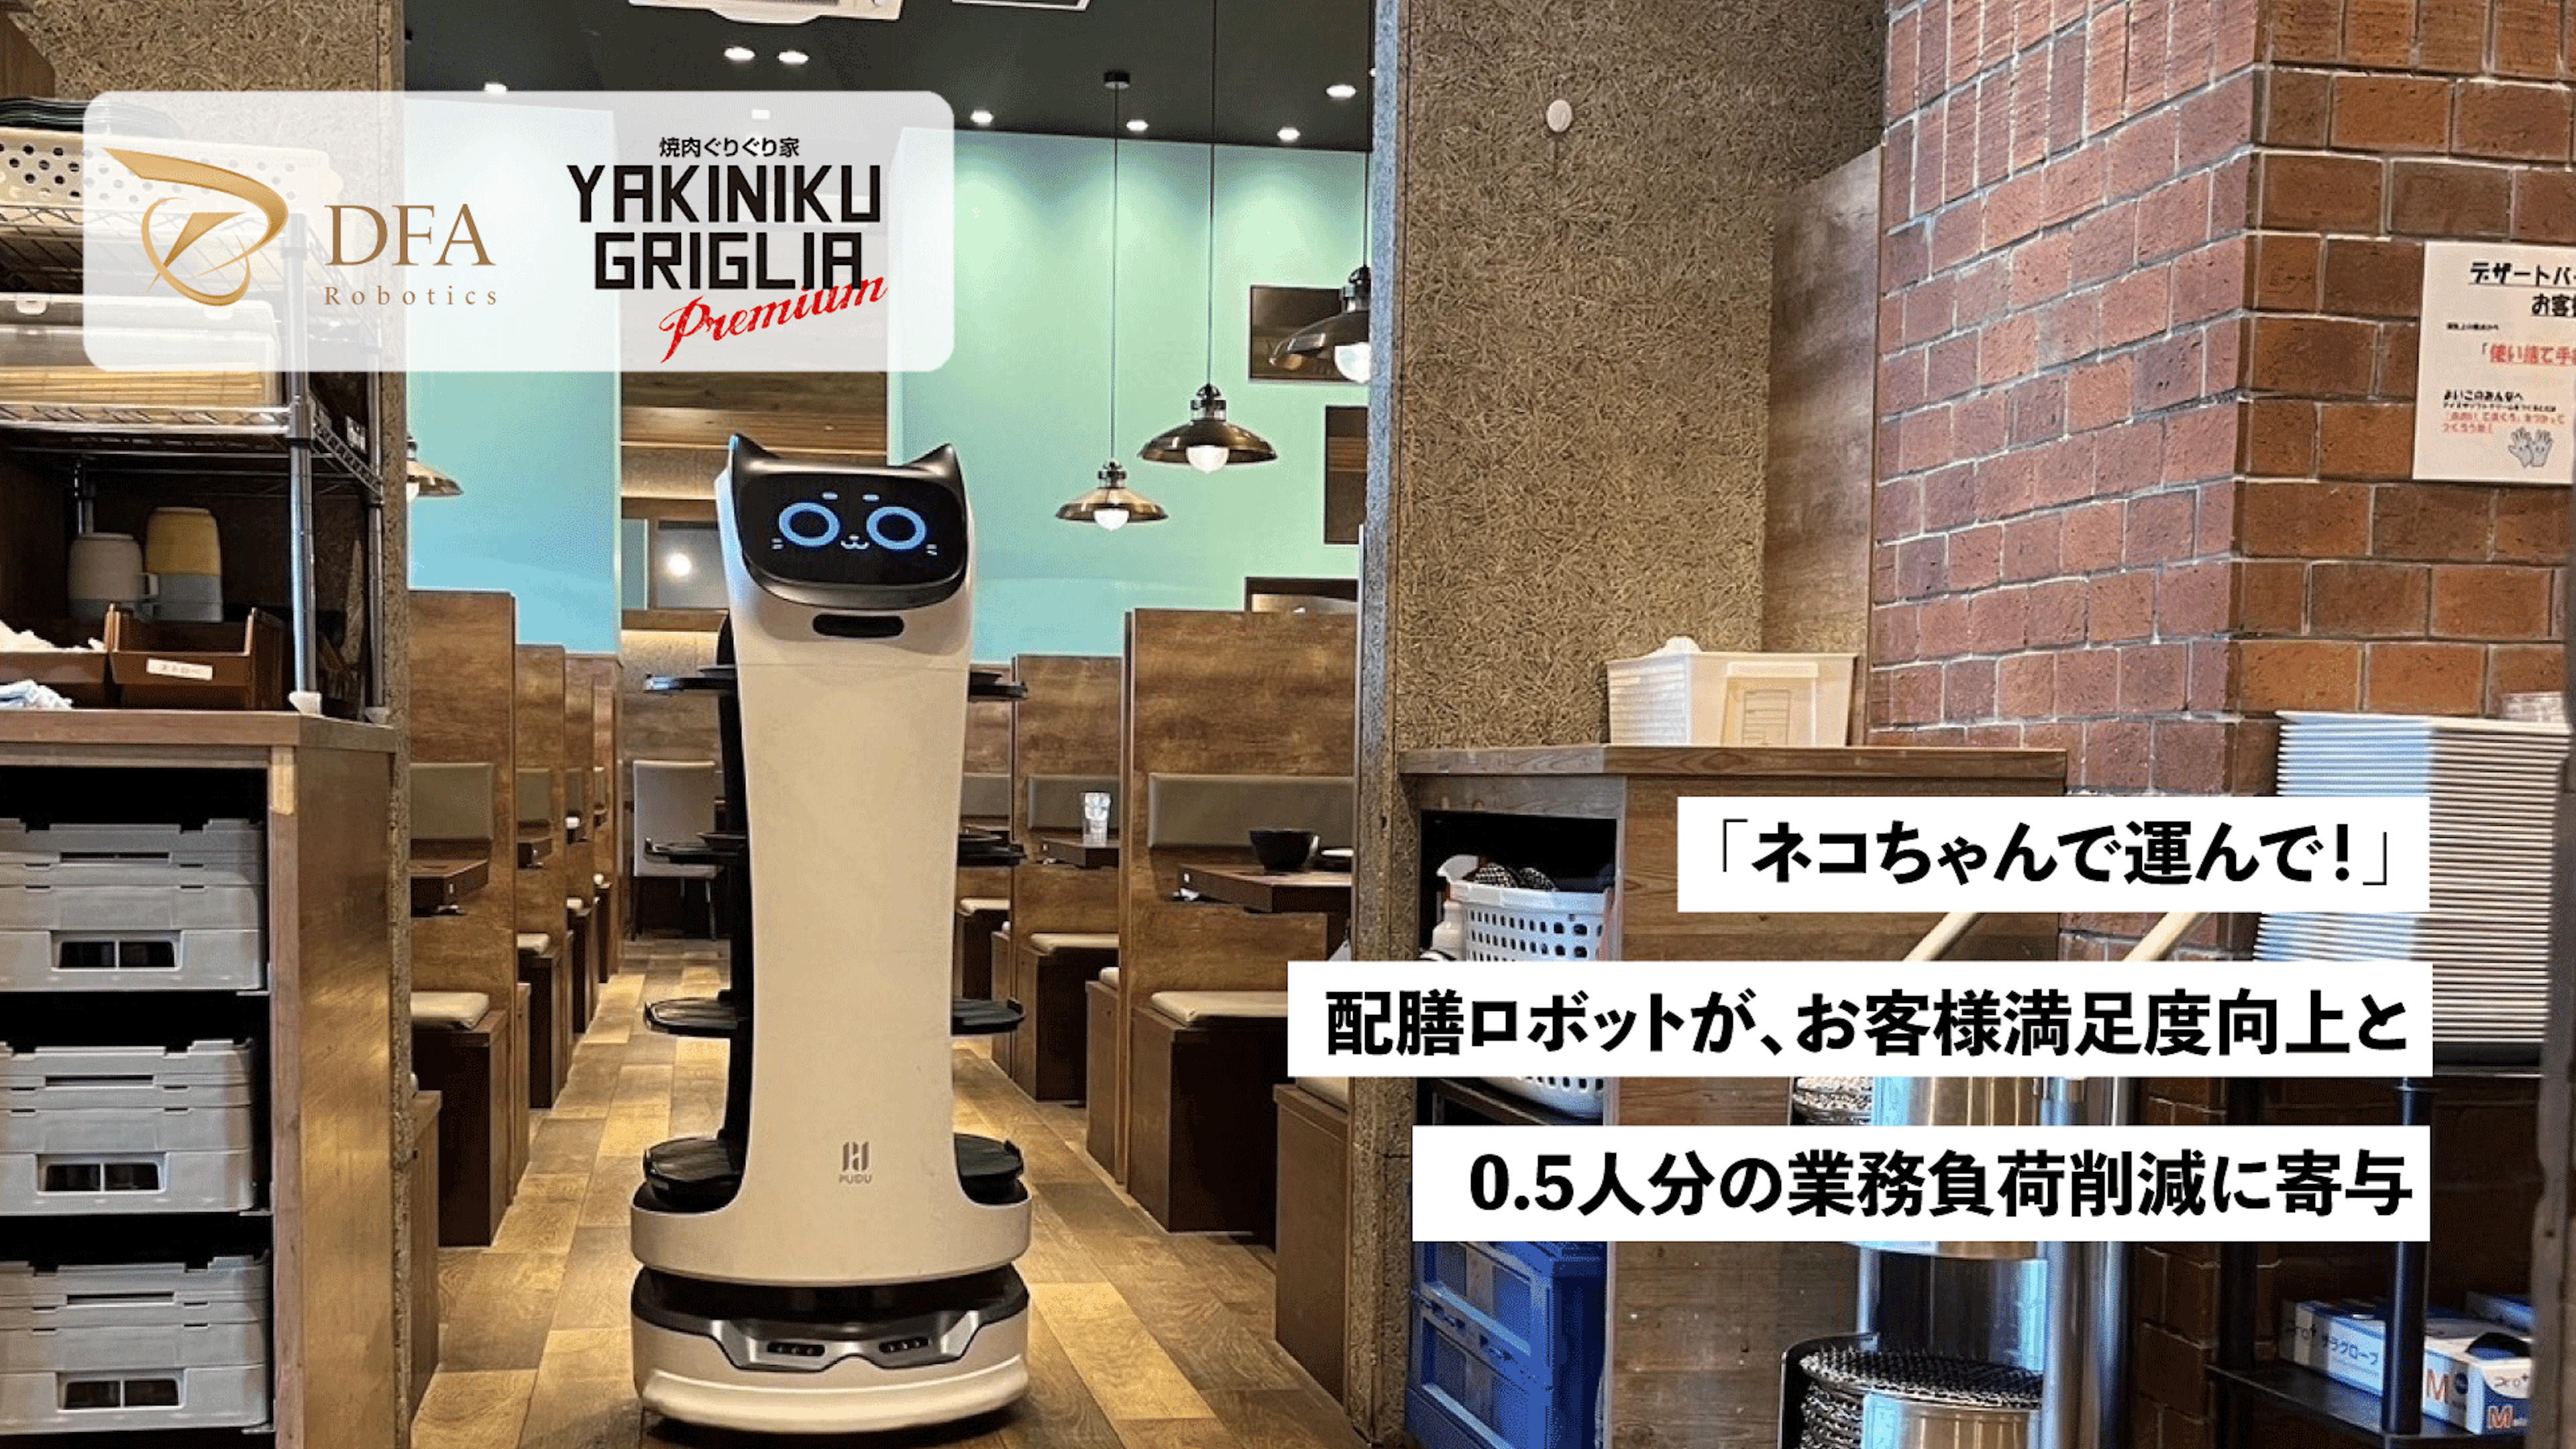 「ネコちゃんで運んで！」
配膳ロボットが、お客様満足度向上と0.5人分の業務負荷削減に寄与